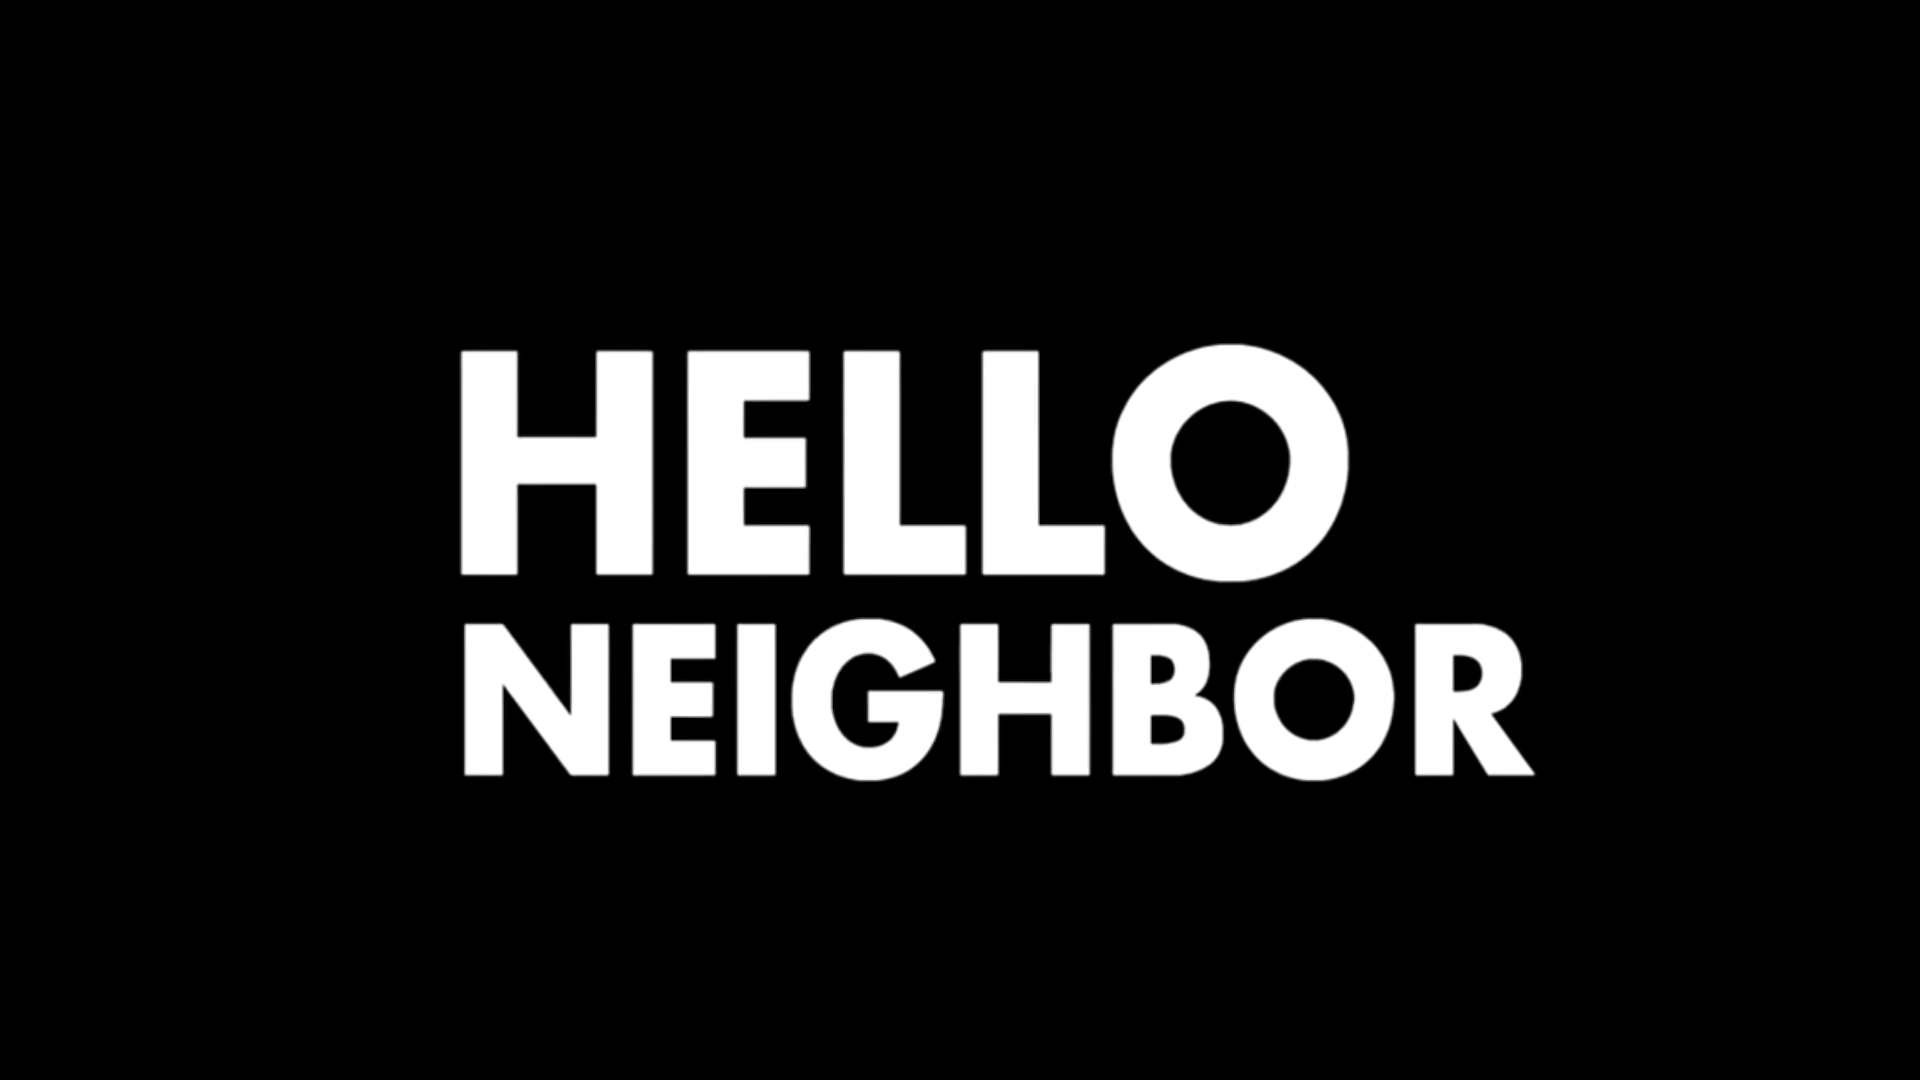 5 часть привет. Привет сосед картинки. Hello Neighbor logo. Надпись соседи. Соседи эмблема.